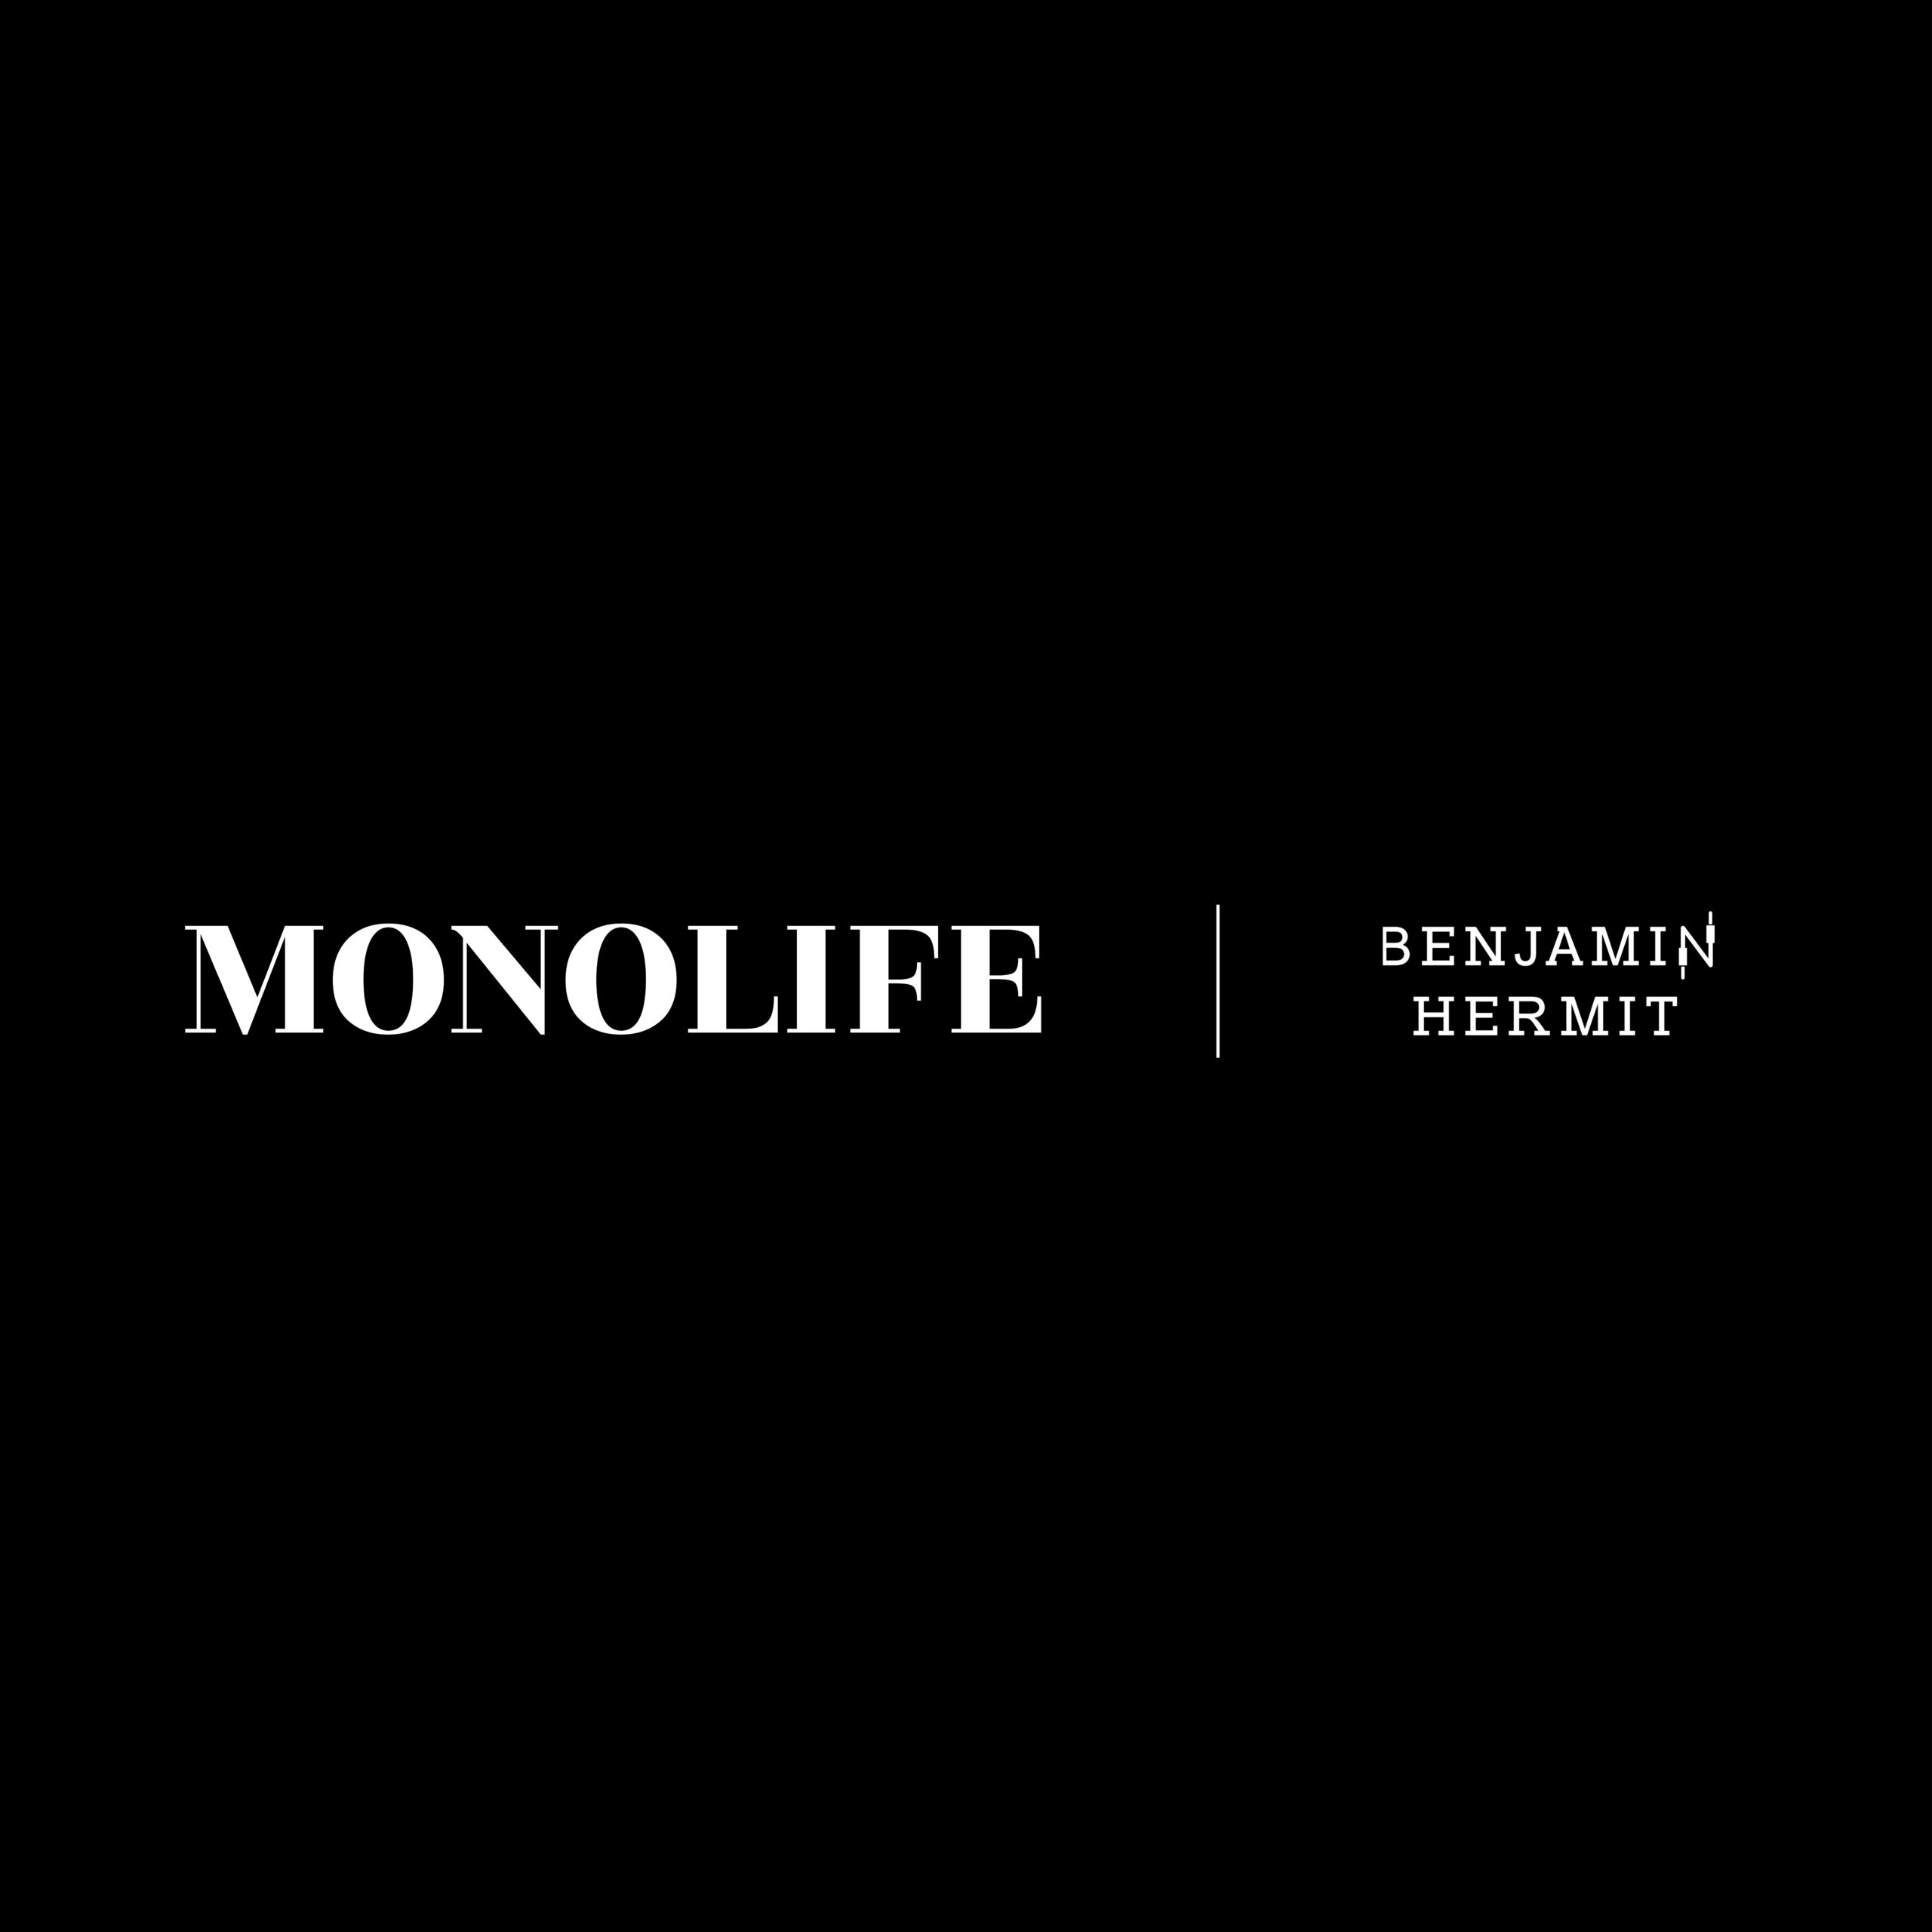 BENJAMIN HERMIT / MONOLIFE